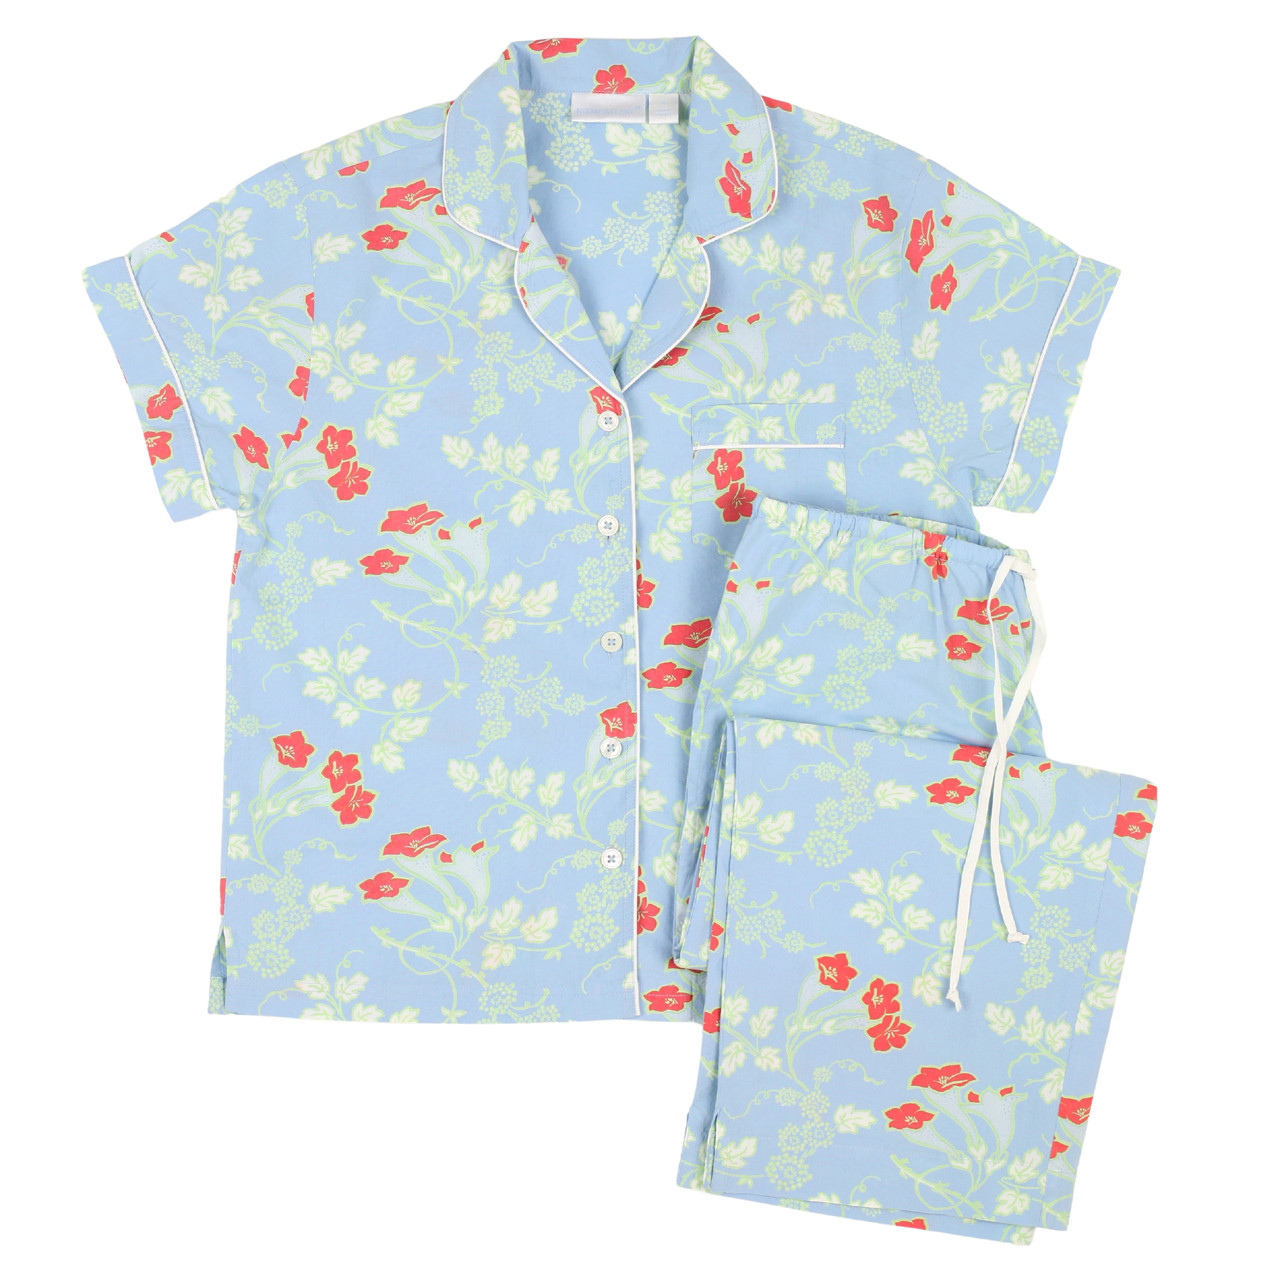 Pjs Blue Floral Ladies Pyjamas